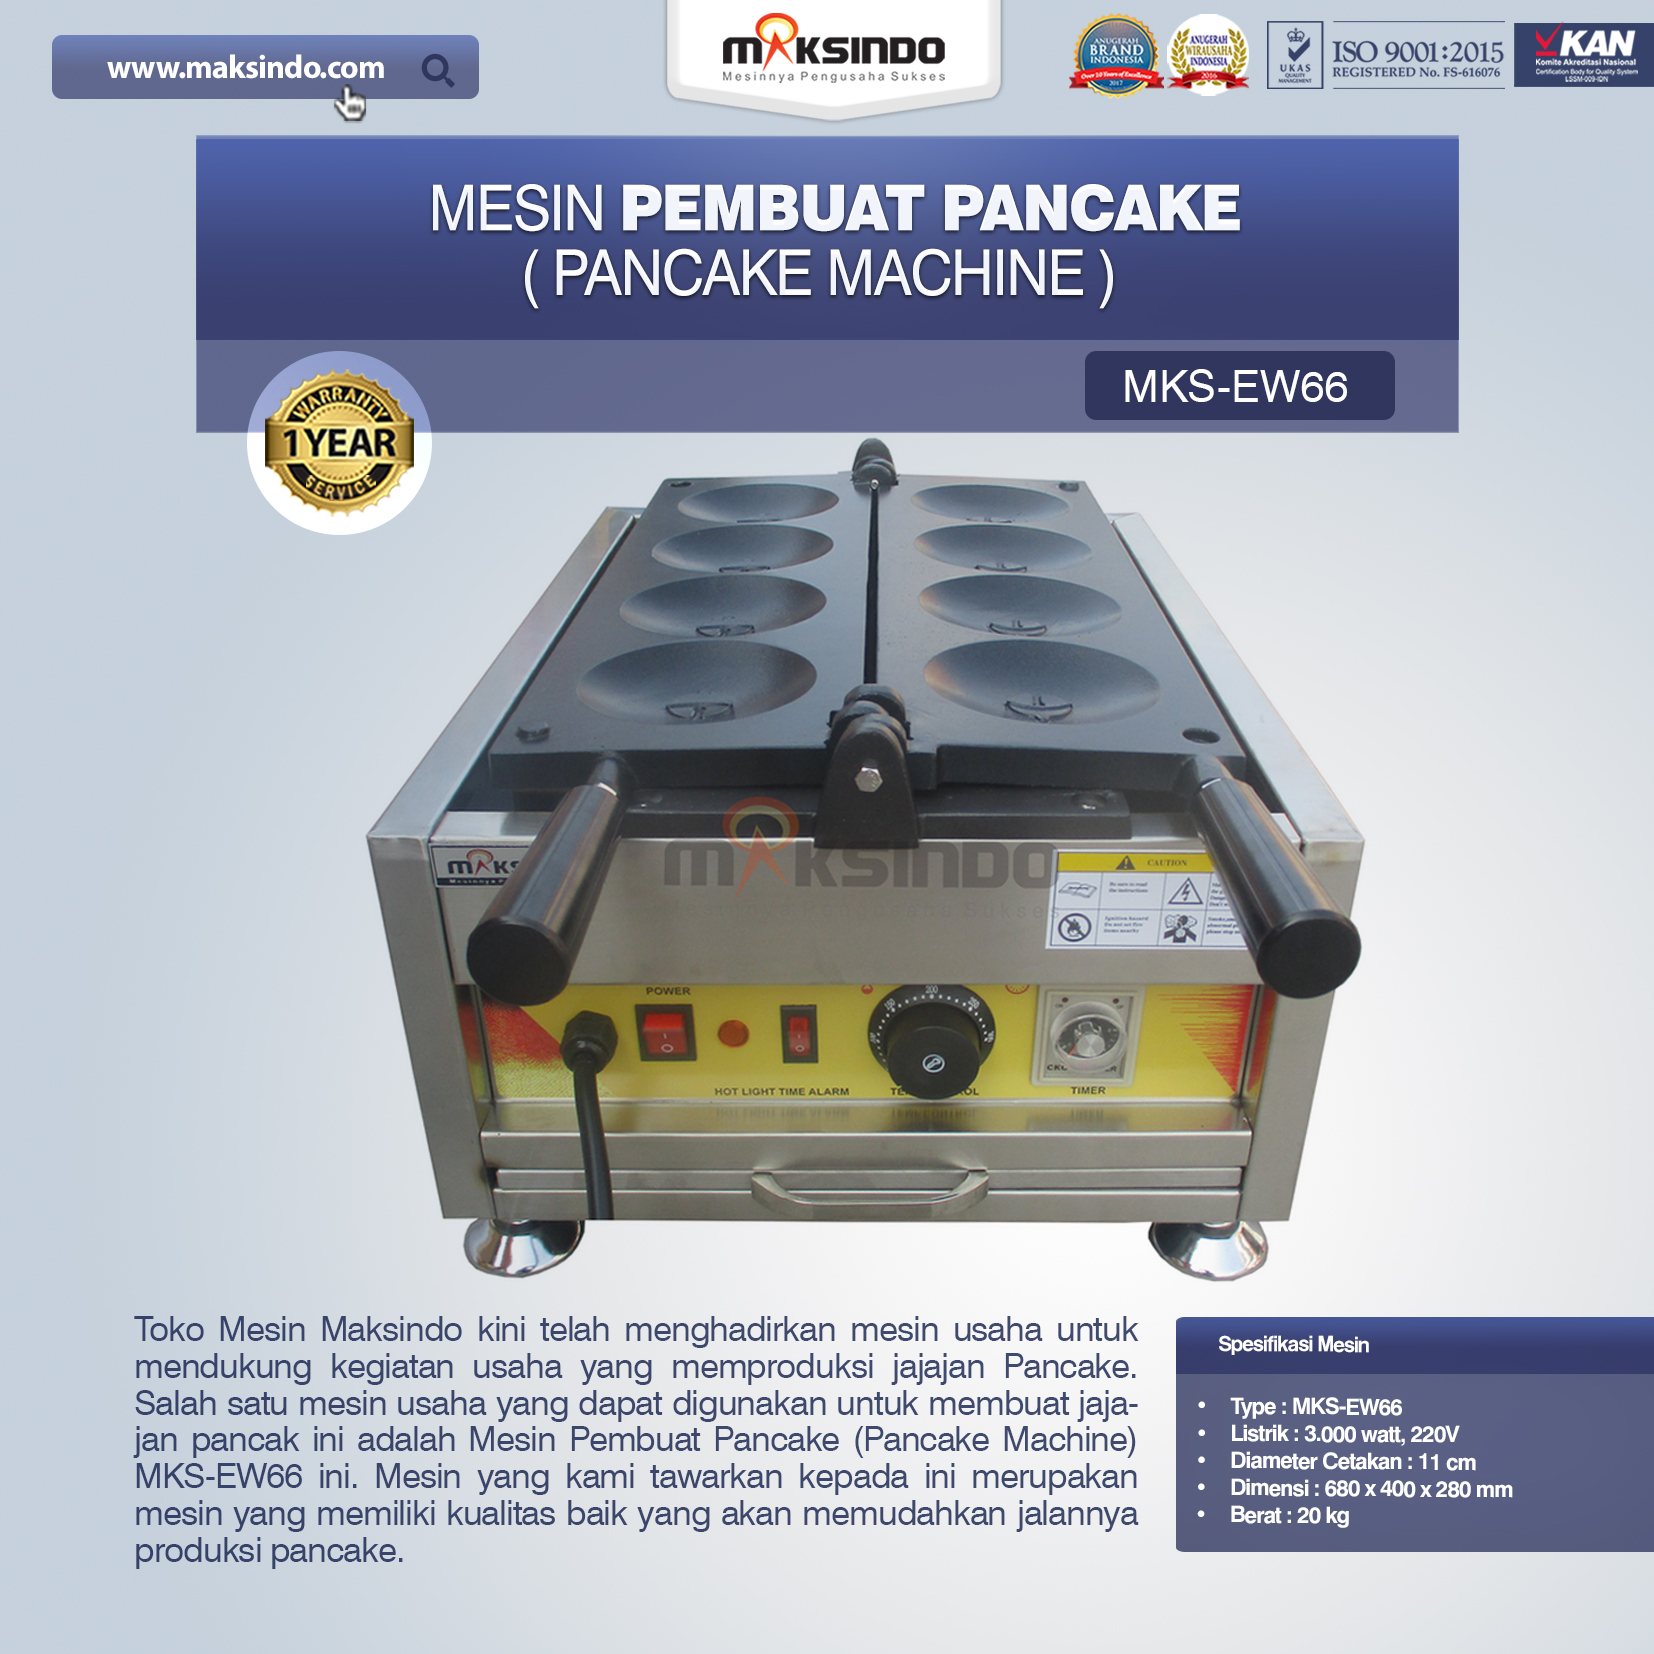 Jual Mesin Pembuat Pancake (Pancake Machine) MKS-EW66 di Solo